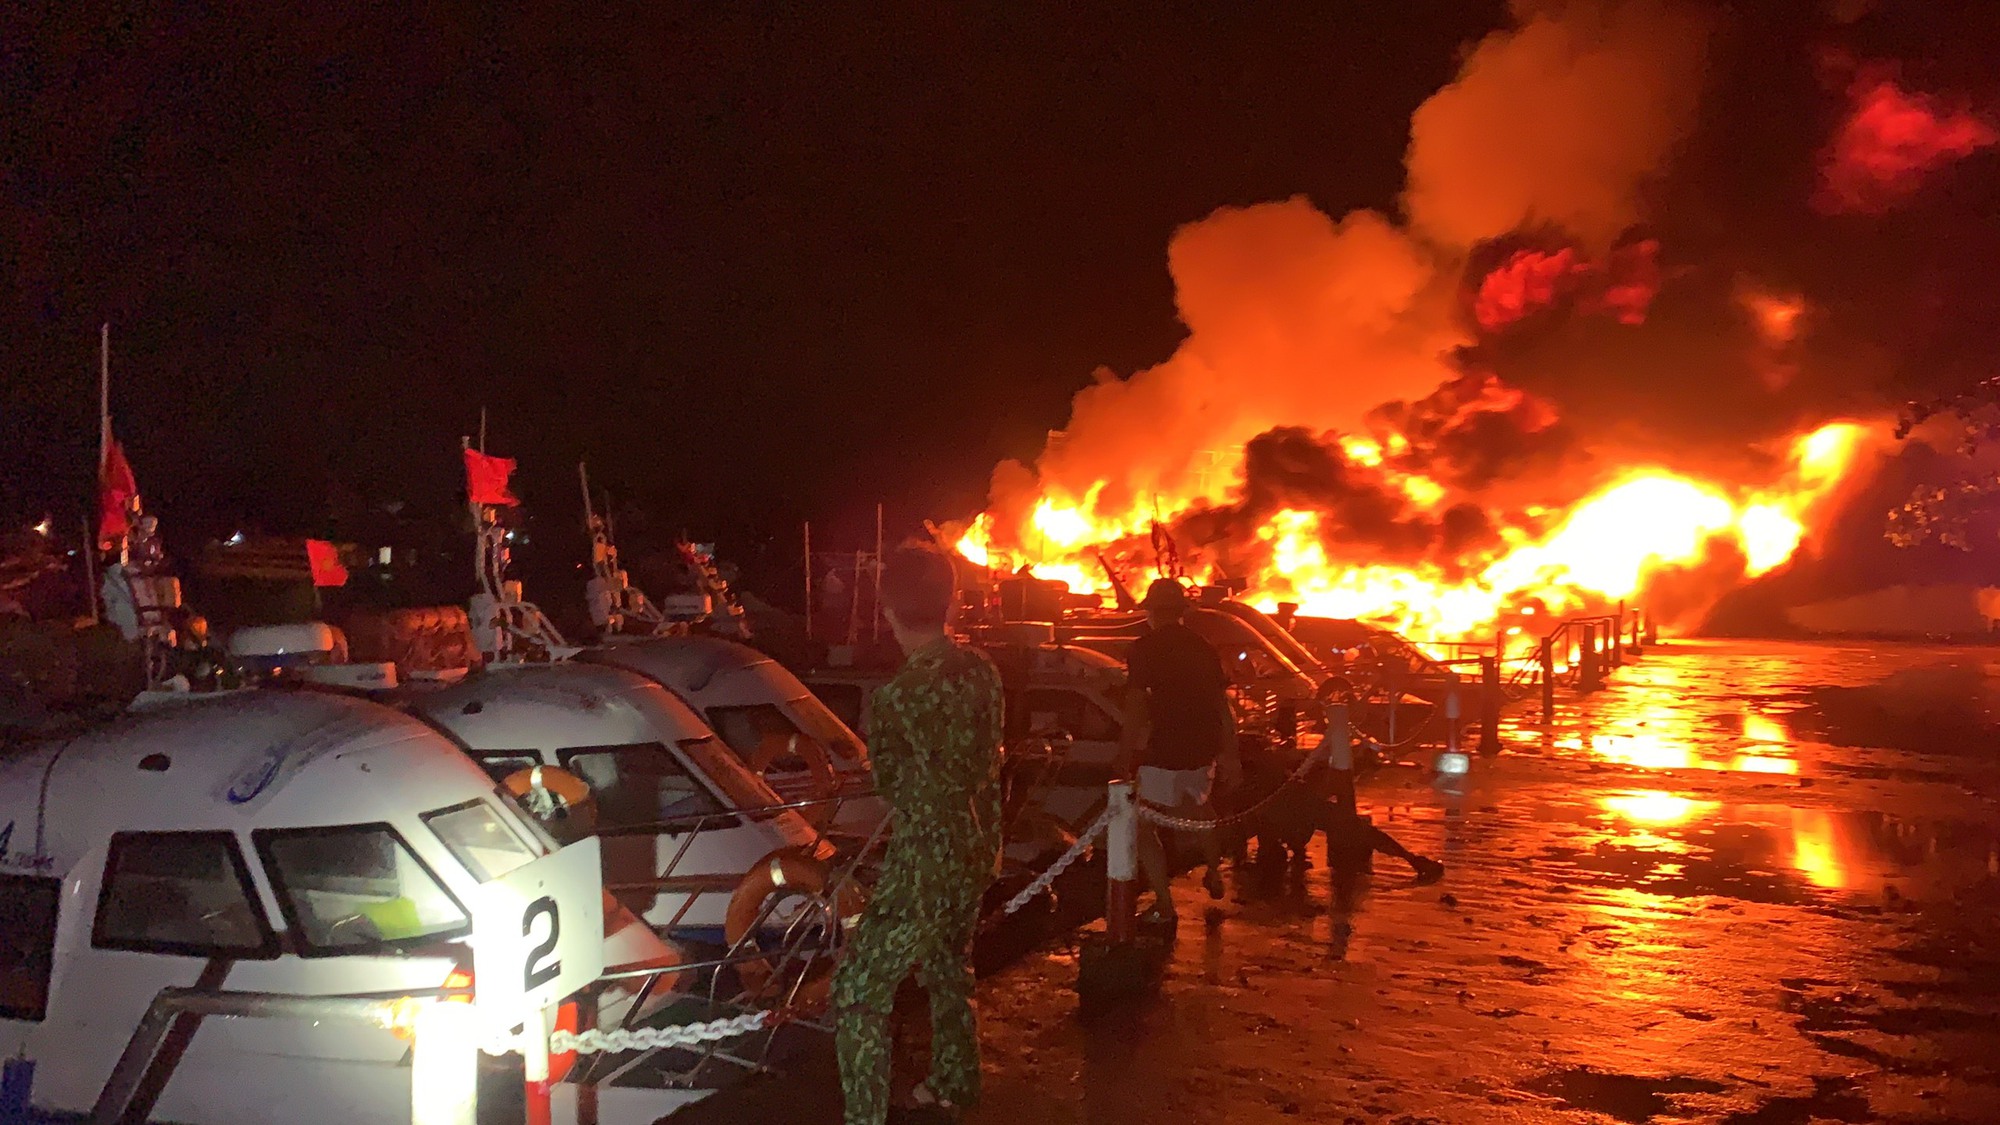 NÓNG - Quảng Nam: 8 chiếc tàu du lịch bốc cháy dữ dội trong đêm - Ảnh 3.